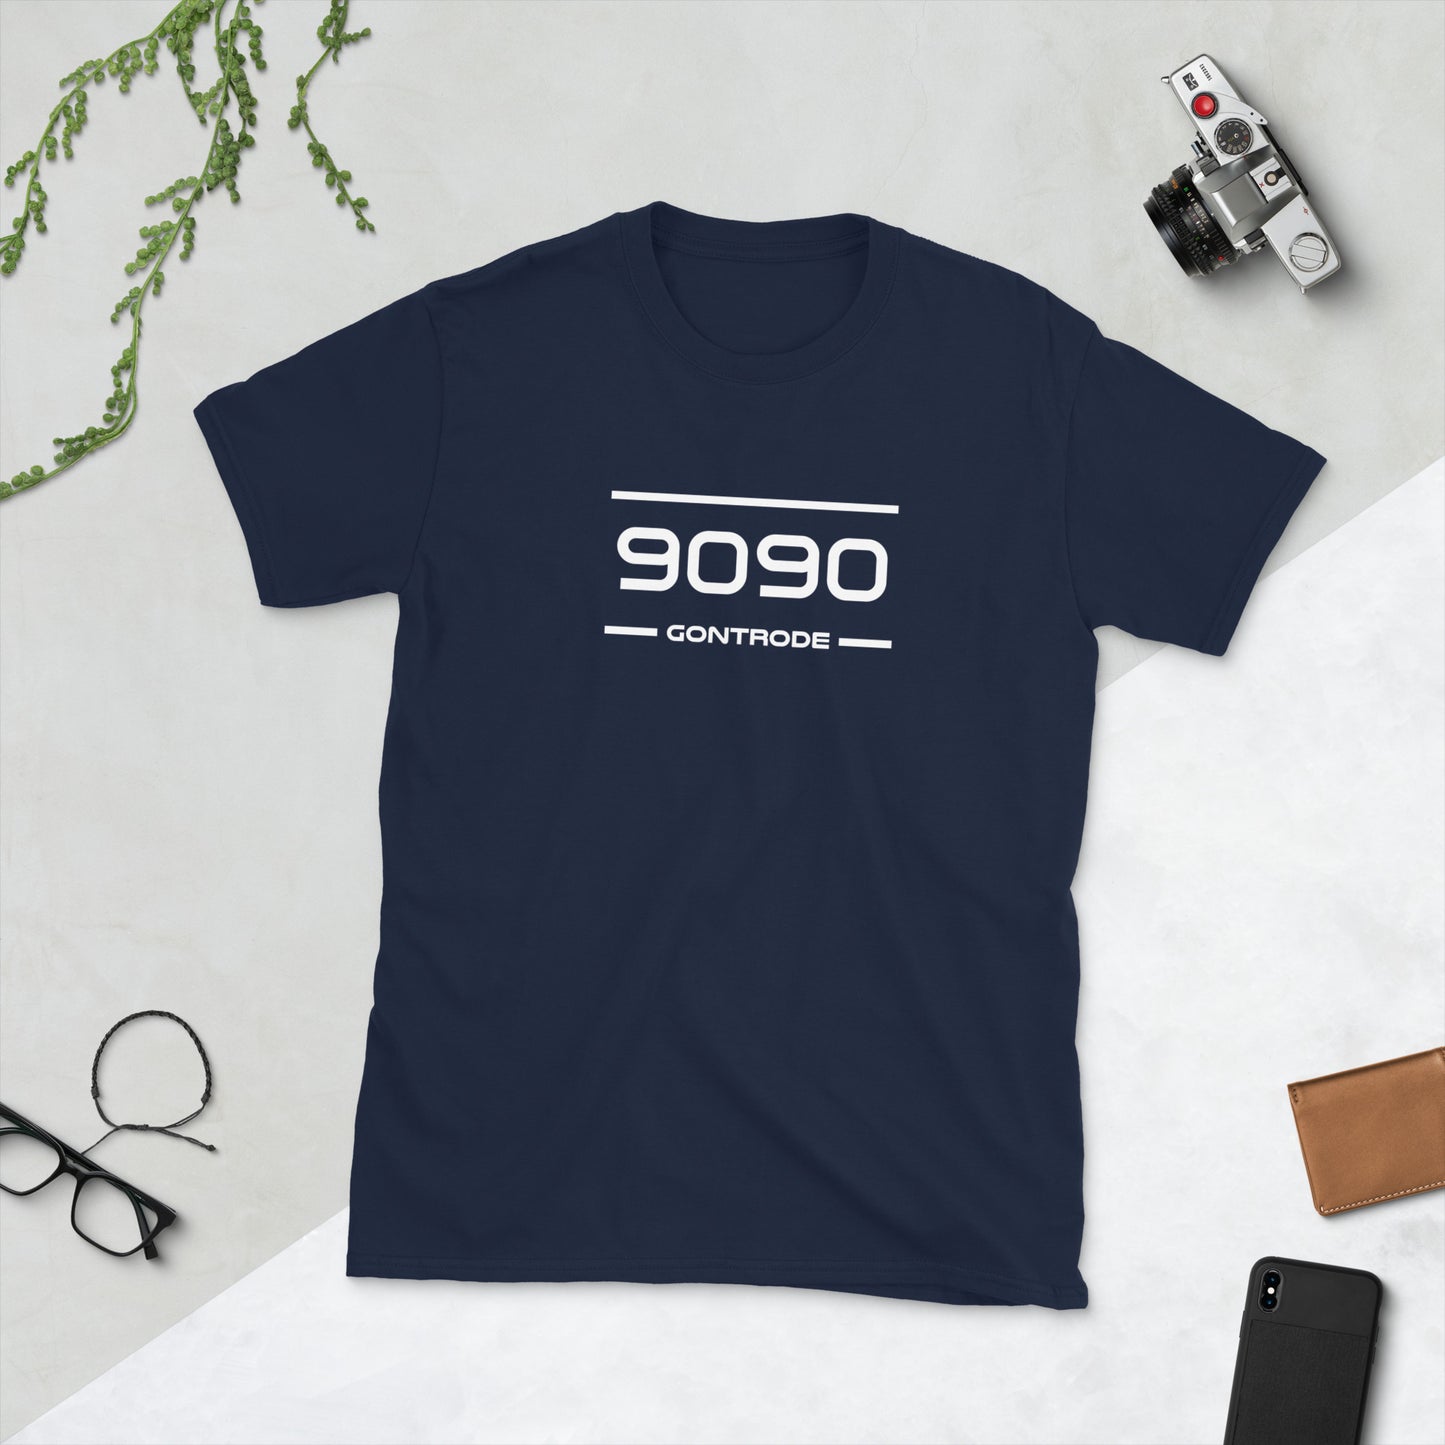 T-Shirt - 9090 - Gontrode